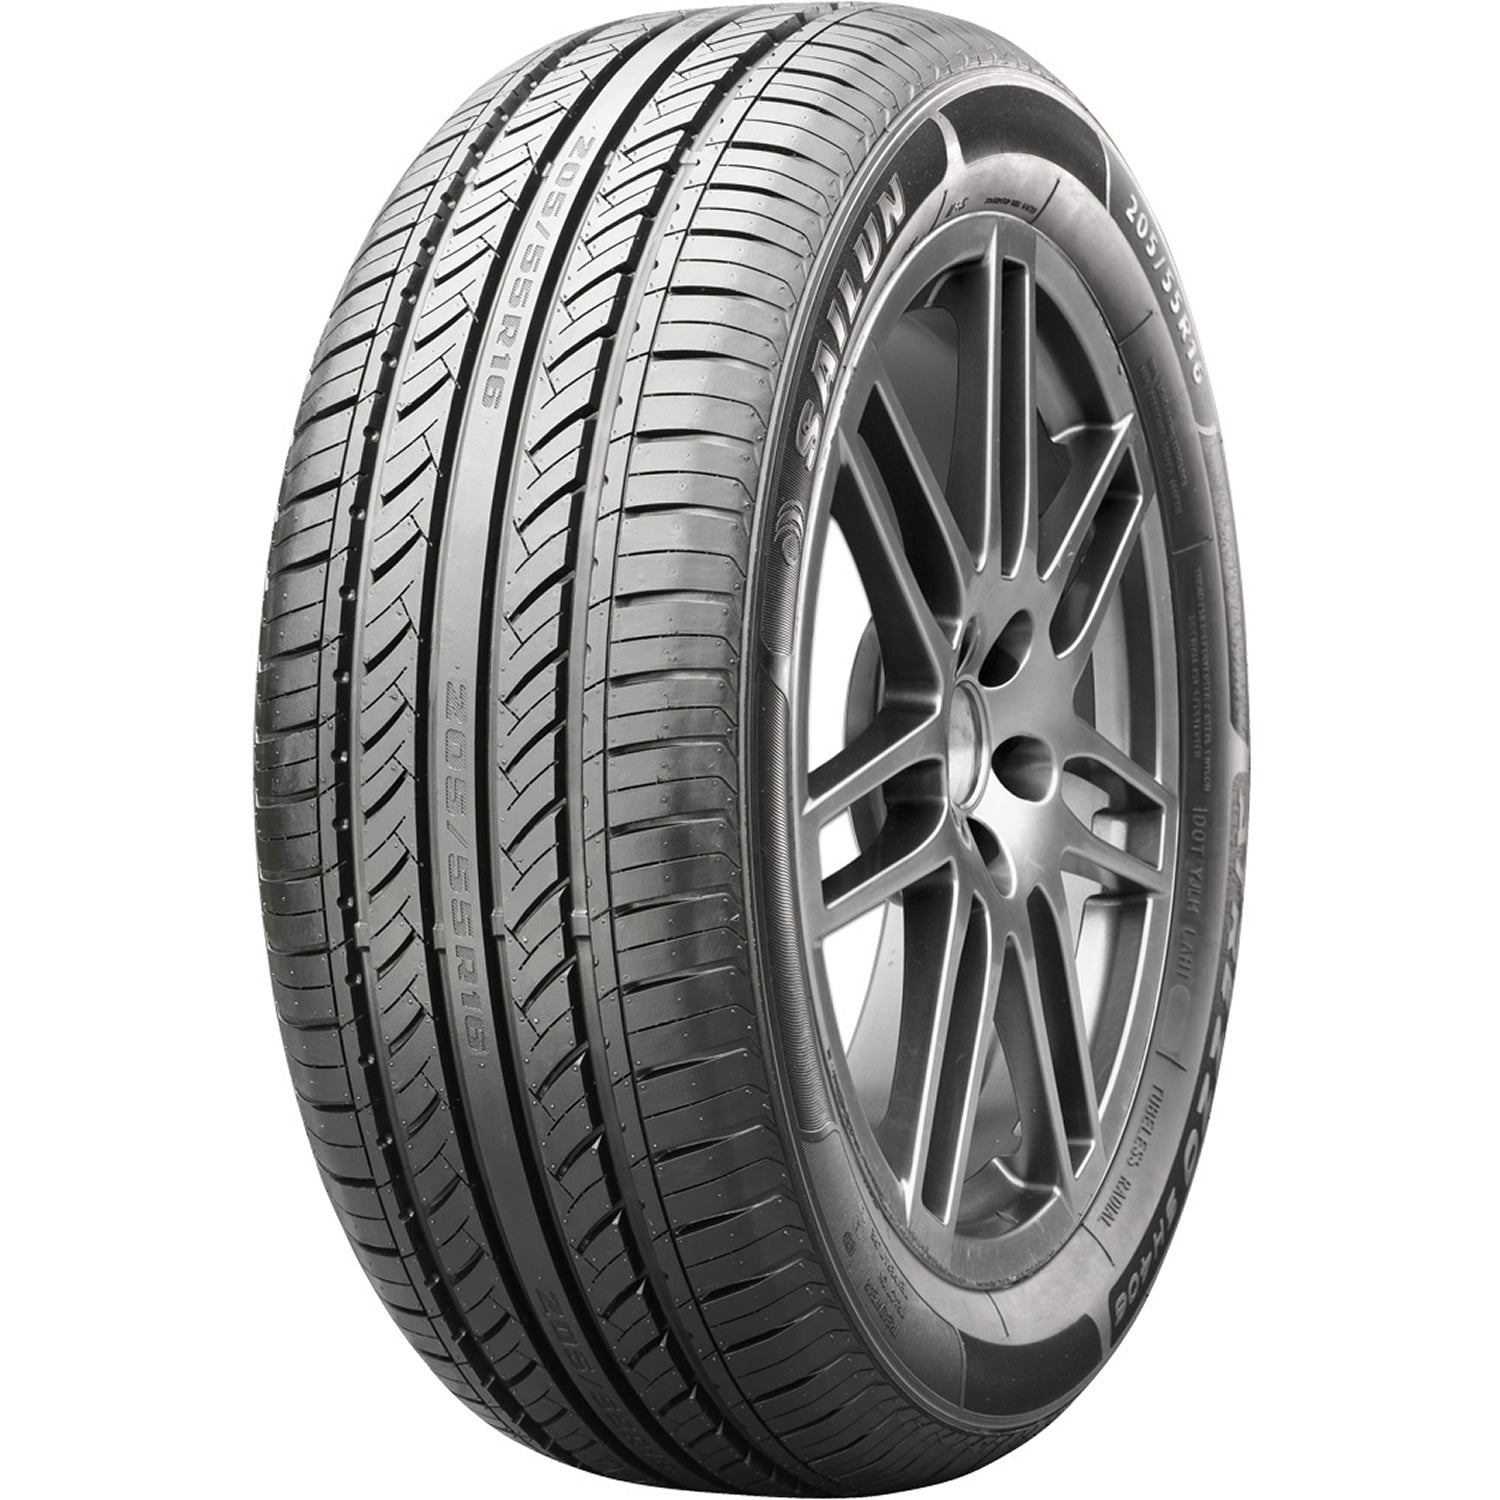 SAILUN ATREZZO SH406 175/65R15 (24X7R 15) Tires